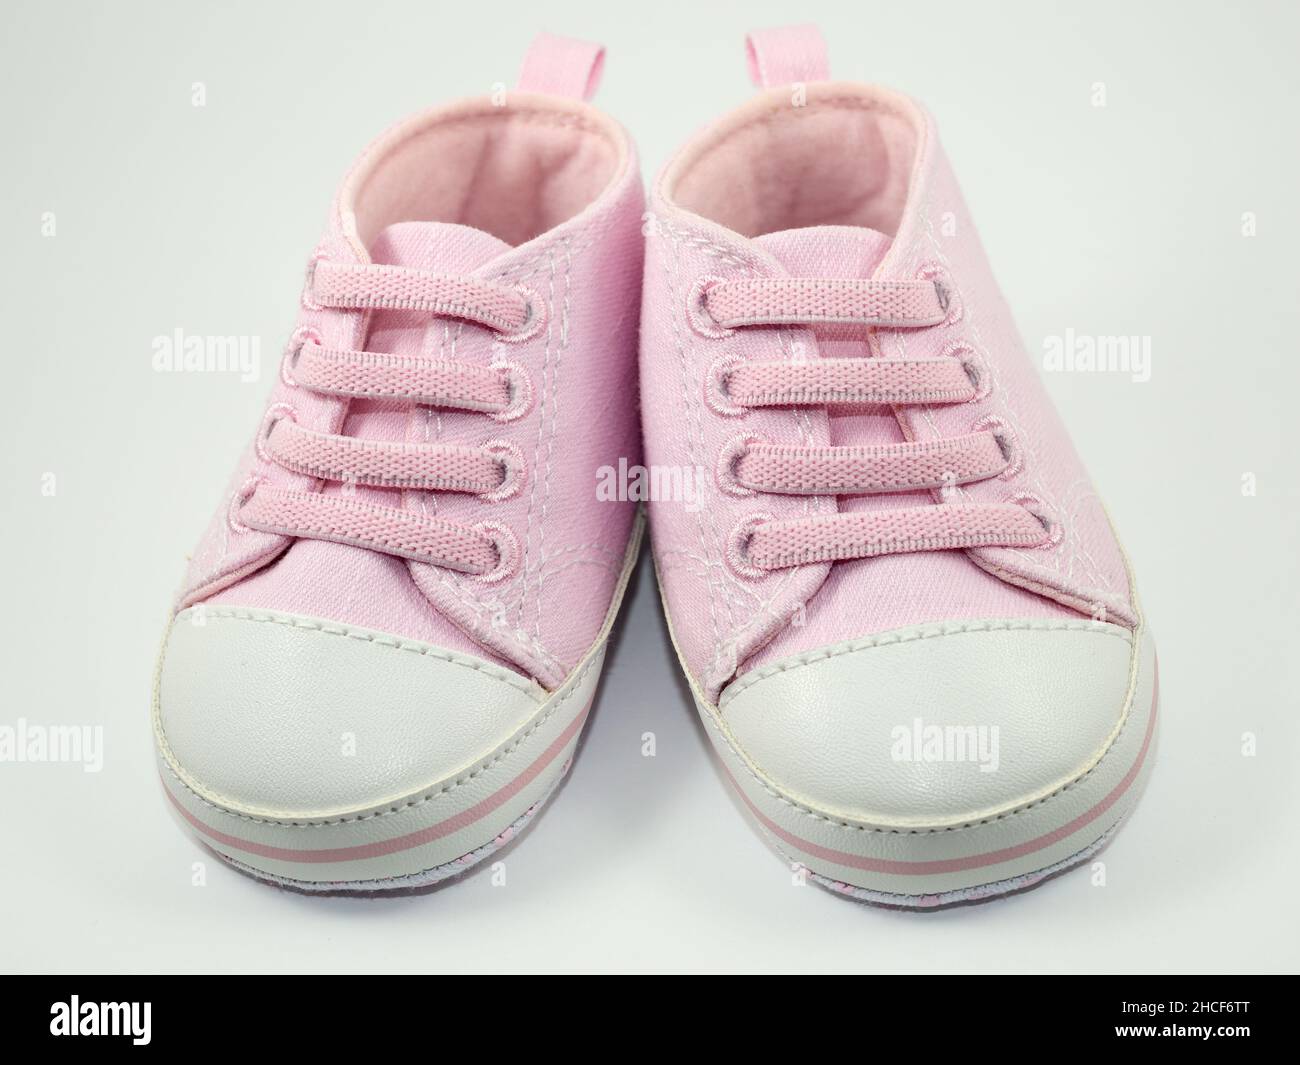 une paire de sneakers roses de petite taille sur fond blanc Banque D'Images